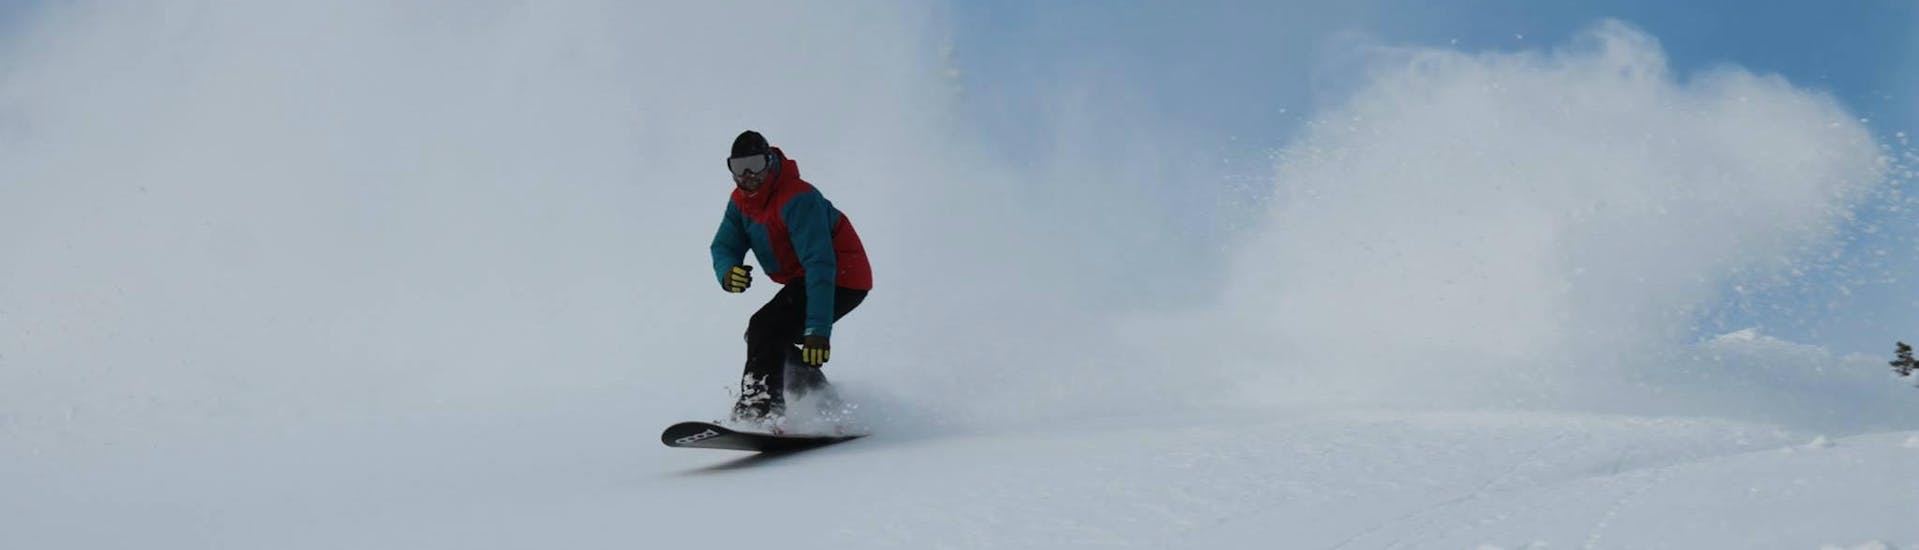 Een snowboarder tijdens kinder snowboard lessen met uitrusting bij Snowboard School Boardstars Schladming.